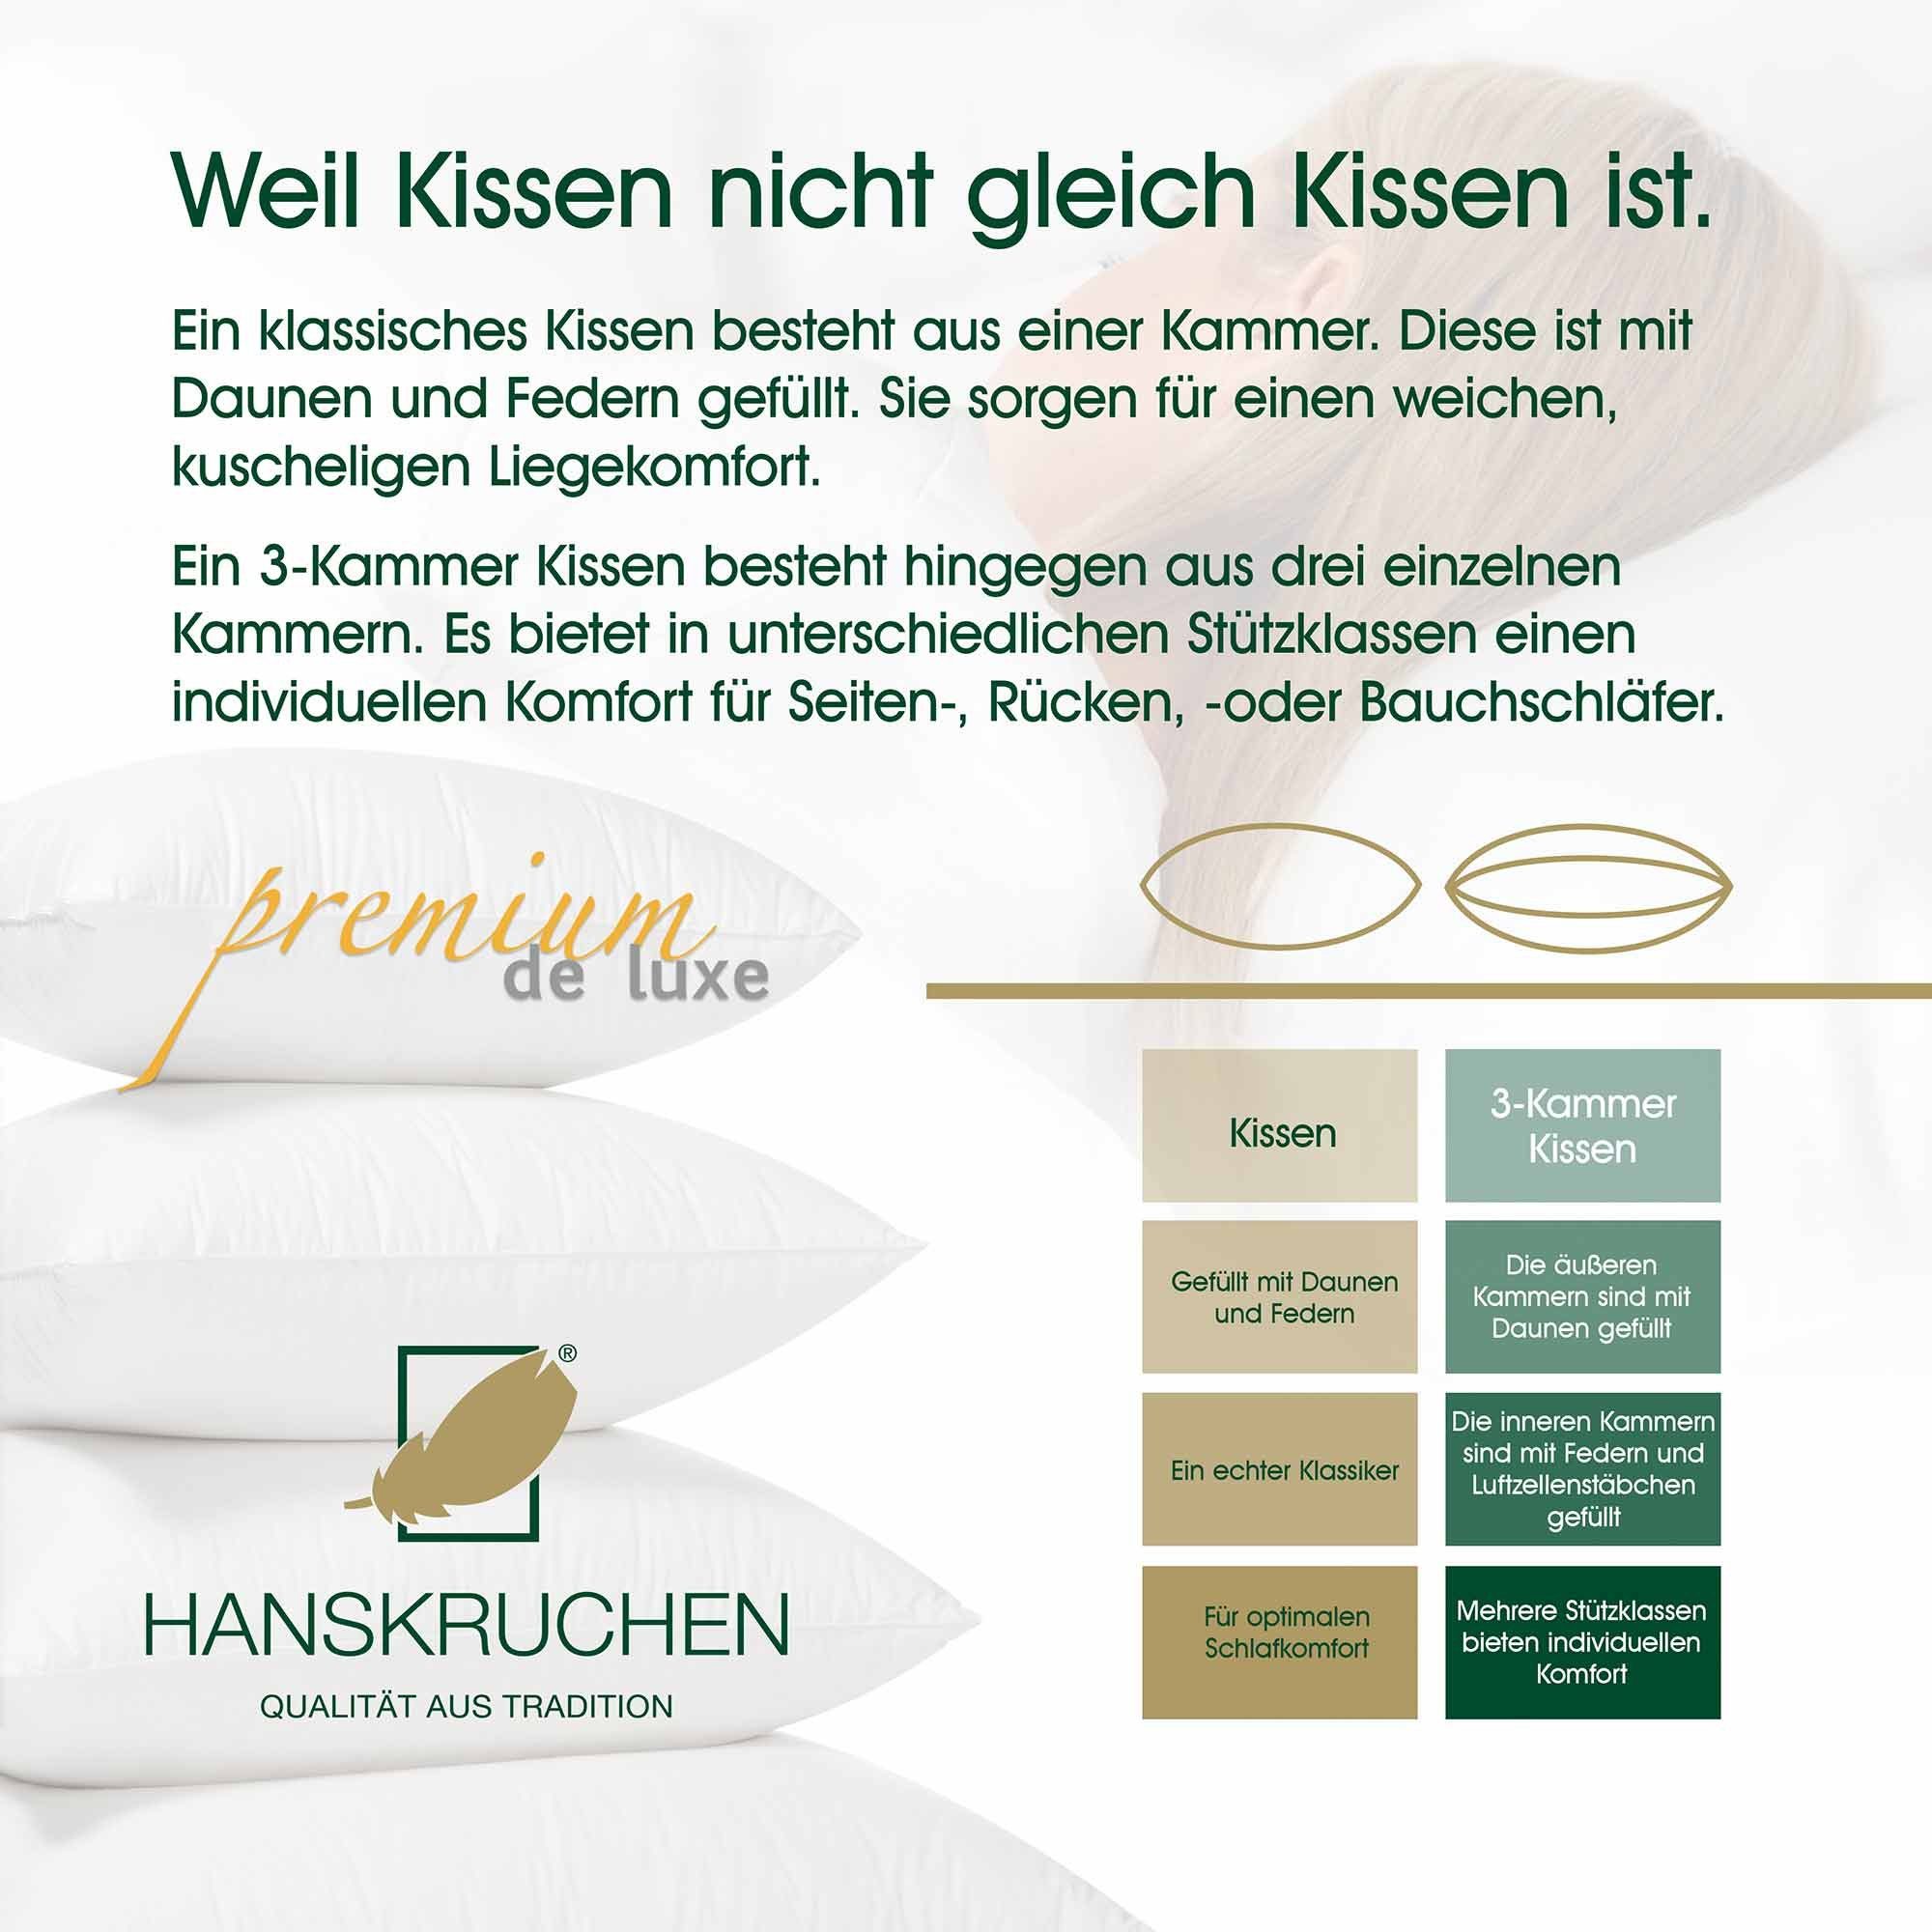 Daunenkissen Premium Bezug: HANSKRUCHEN, Daunen, Deutschland, Federn, hergestellt 90% in Baumwolle, allergikerfreundlich weiß Luxe, de 40x60 100% 10% cm, Füllung